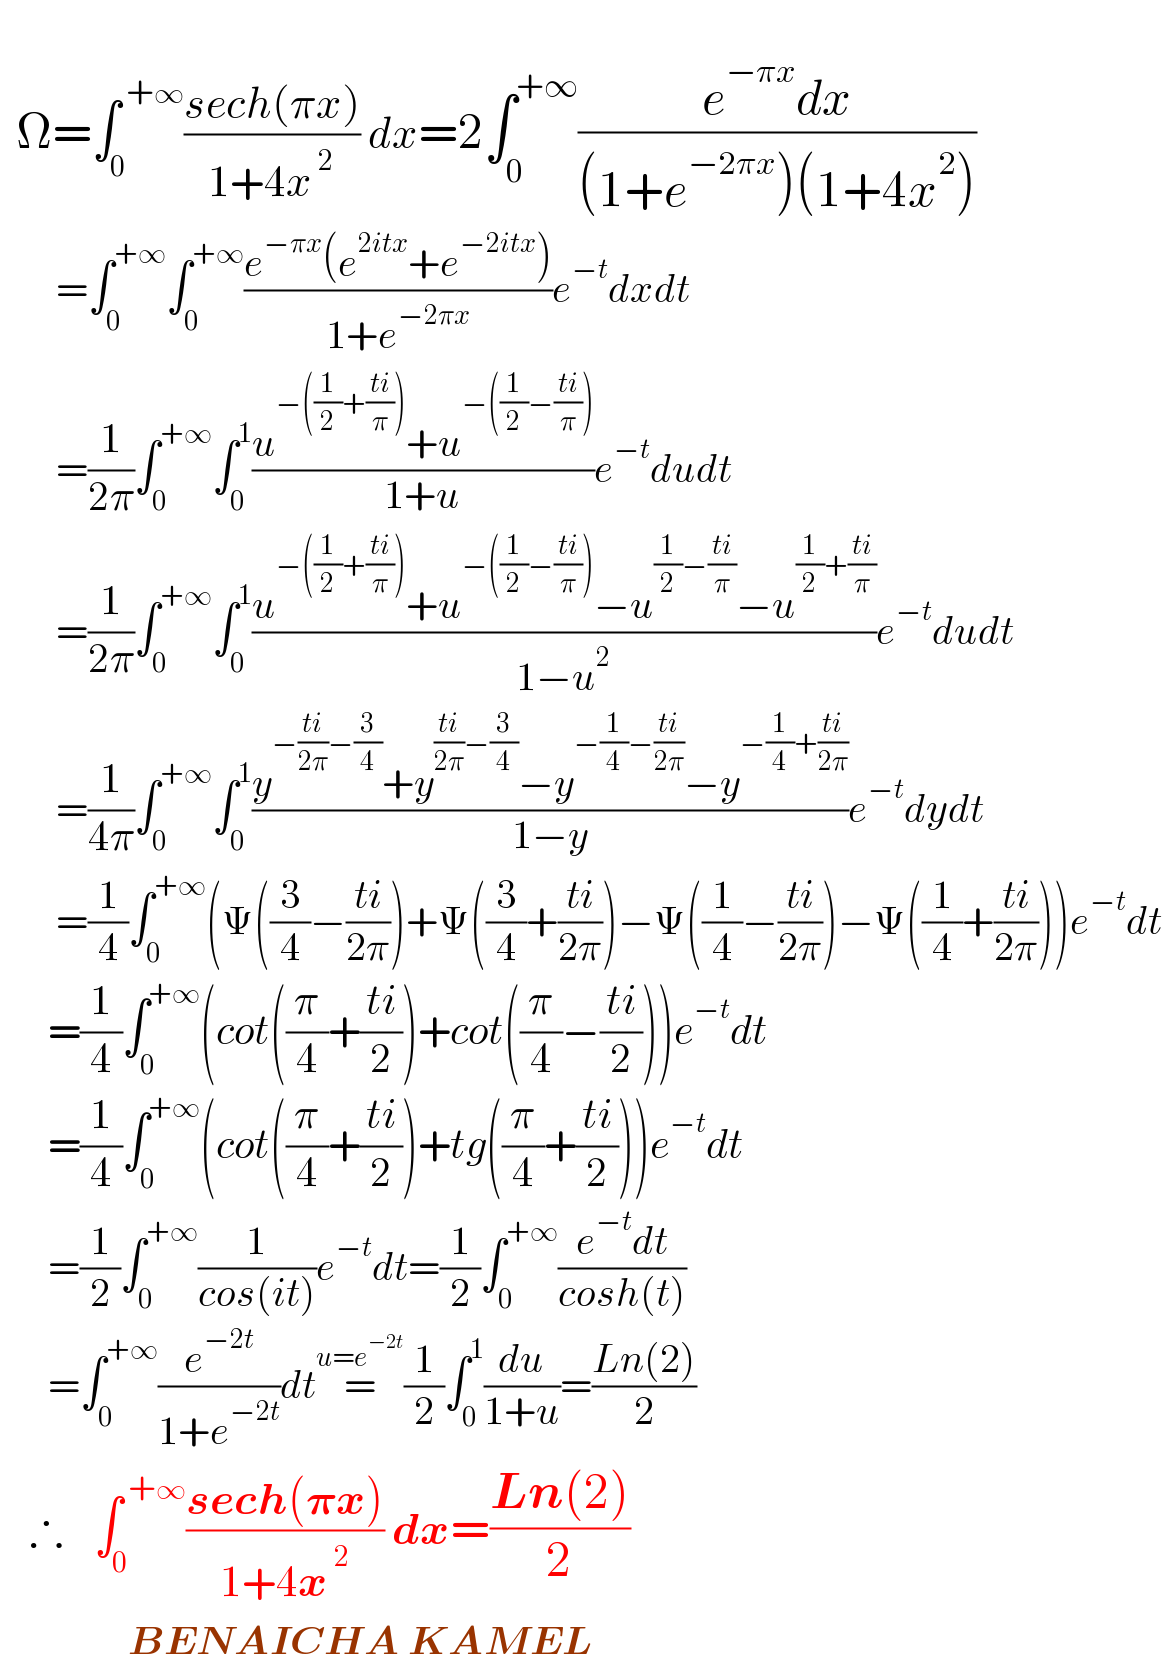     Ω=∫_0 ^( +∞) ((sech(πx))/(1+4x^( 2) )) dx=2∫_0 ^(+∞) ((e^(−πx) dx)/((1+e^(−2πx) )(1+4x^2 )))         =∫_0 ^(+∞) ∫_0 ^(+∞) ((e^(−πx) (e^(2itx) +e^(−2itx) ))/(1+e^(−2πx) ))e^(−t) dxdt         =(1/(2π))∫_0 ^(+∞) ∫_0 ^1 ((u^(−((1/2)+((ti)/π))) +u^(−((1/2)−((ti)/π))) )/(1+u))e^(−t) dudt         =(1/(2π))∫_0 ^(+∞) ∫_0 ^1 ((u^(−((1/2)+((ti)/π))) +u^(−((1/2)−((ti)/π))) −u^((1/2)−((ti)/π)) −u^((1/2)+((ti)/π)) )/(1−u^2 ))e^(−t) dudt         =(1/(4π))∫_0 ^(+∞) ∫_0 ^1 ((y^(−((ti)/(2π))−(3/4)) +y^(((ti)/(2π))−(3/4)) −y^(−(1/4)−((ti)/(2π))) −y^(−(1/4)+((ti)/(2π))) )/(1−y))e^(−t) dydt         =(1/4)∫_0 ^(+∞) (Ψ((3/4)−((ti)/(2π)))+Ψ((3/4)+((ti)/(2π)))−Ψ((1/4)−((ti)/(2π)))−Ψ((1/4)+((ti)/(2π))))e^(−t) dt        =(1/4)∫_0 ^(+∞) (cot((π/4)+((ti)/2))+cot((π/4)−((ti)/2)))e^(−t) dt        =(1/4)∫_0 ^(+∞) (cot((π/4)+((ti)/2))+tg((π/4)+((ti)/2)))e^(−t) dt        =(1/2)∫_0 ^(+∞) (1/(cos(it)))e^(−t) dt=(1/2)∫_0 ^(+∞) ((e^(−t) dt)/(cosh(t)))        =∫_0 ^(+∞) (e^(−2t) /(1+e^(−2t) ))dt=^(u=e^(−2t) ) (1/2)∫_0 ^1 (du/(1+u))=((Ln(2))/2)     ∴   ∫_0 ^( +∞) ((sech(𝛑x))/(1+4x^( 2) )) dx=((Ln(2))/2)                  BENAICHA KAMEL  